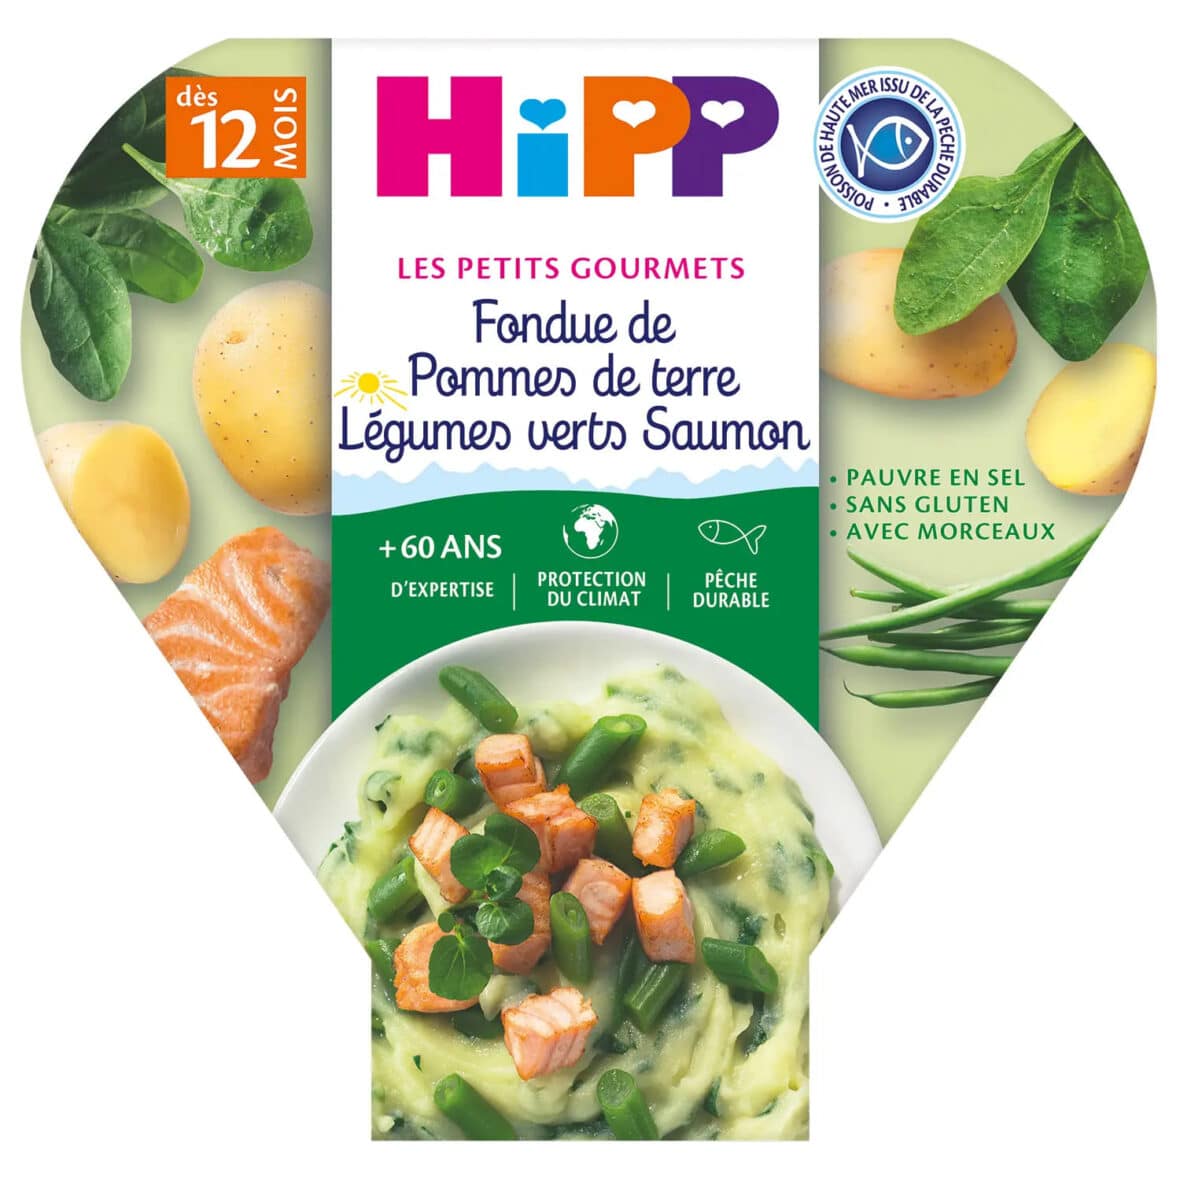 HiPP Fondue de Pommes de terre Légumes verts Saumon 12m+